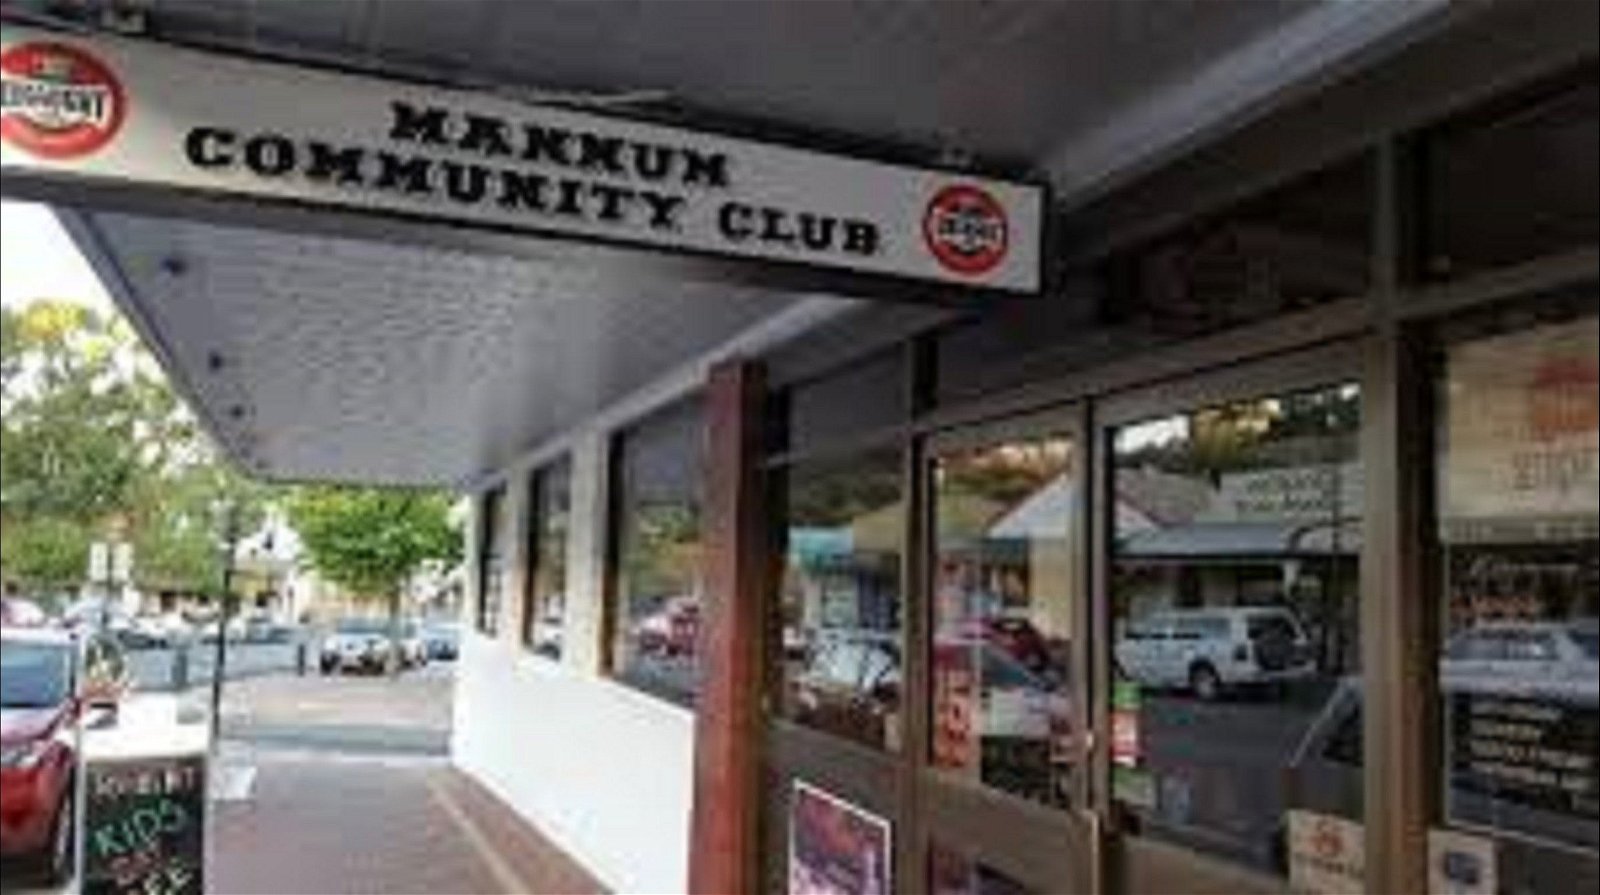 Mannum Community Club - Broome Tourism